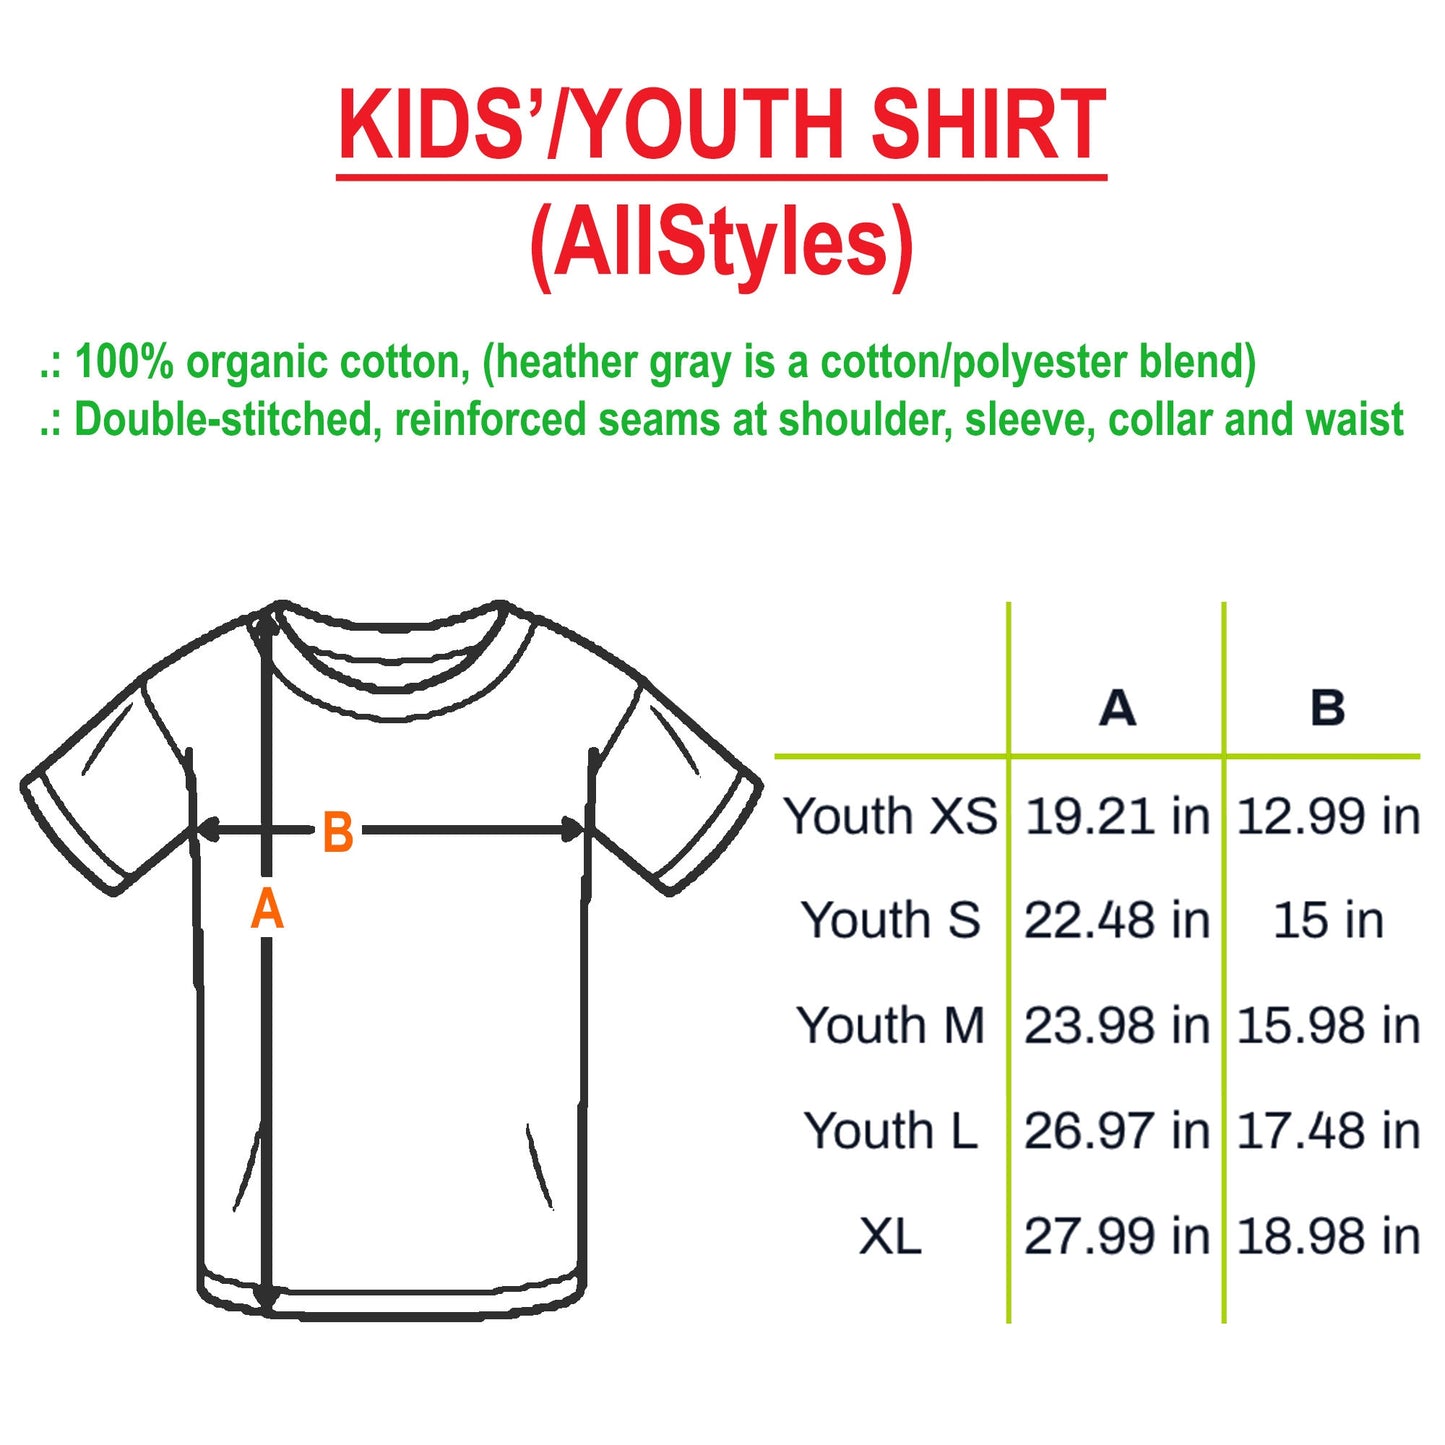 Soccer Ball Birthday Shirt, Soccer Gift, Soccer Team Gift, Soccer, Personalized Soccer, Soccer Shirt, Soccer Player, Soccer Birthday Shirt